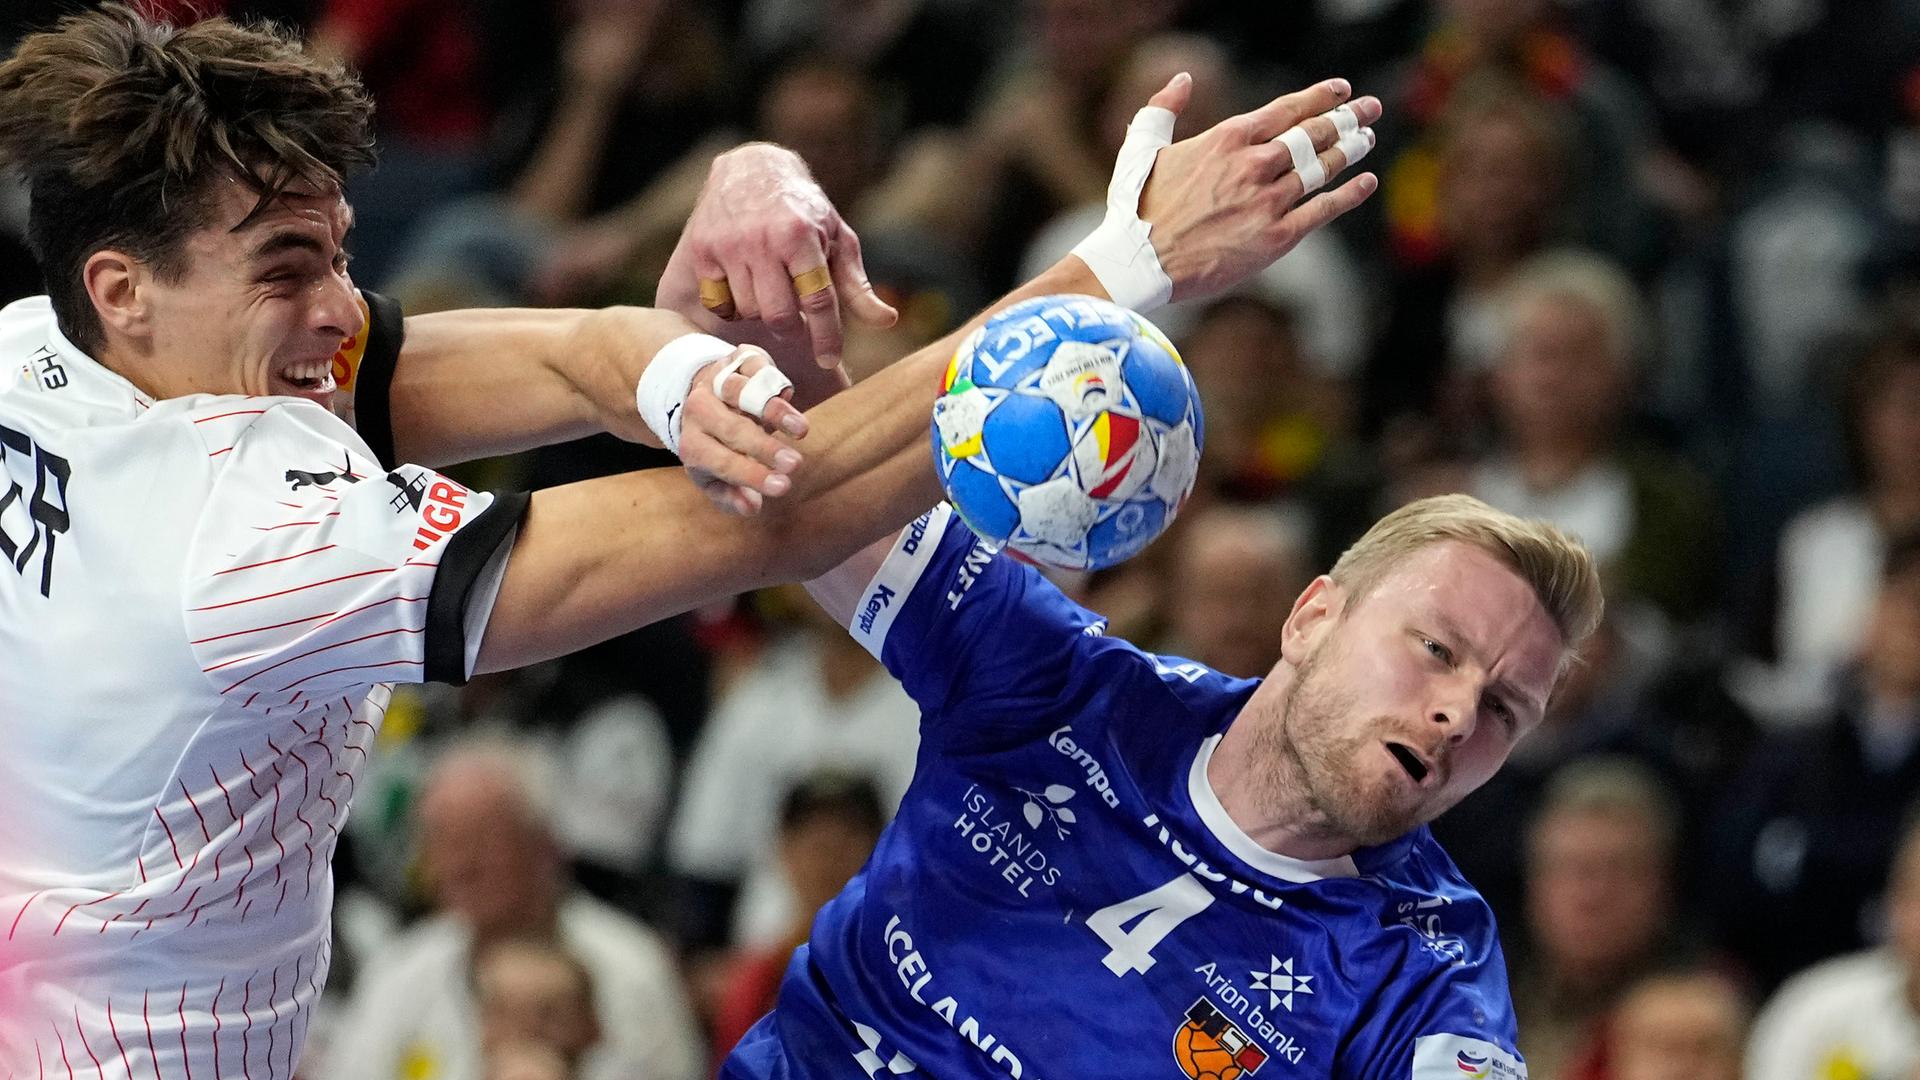 Deutschlands National-Spieler Julian Köster im Zwei-Kampf mit dem Isländer Aron Palmarsson.